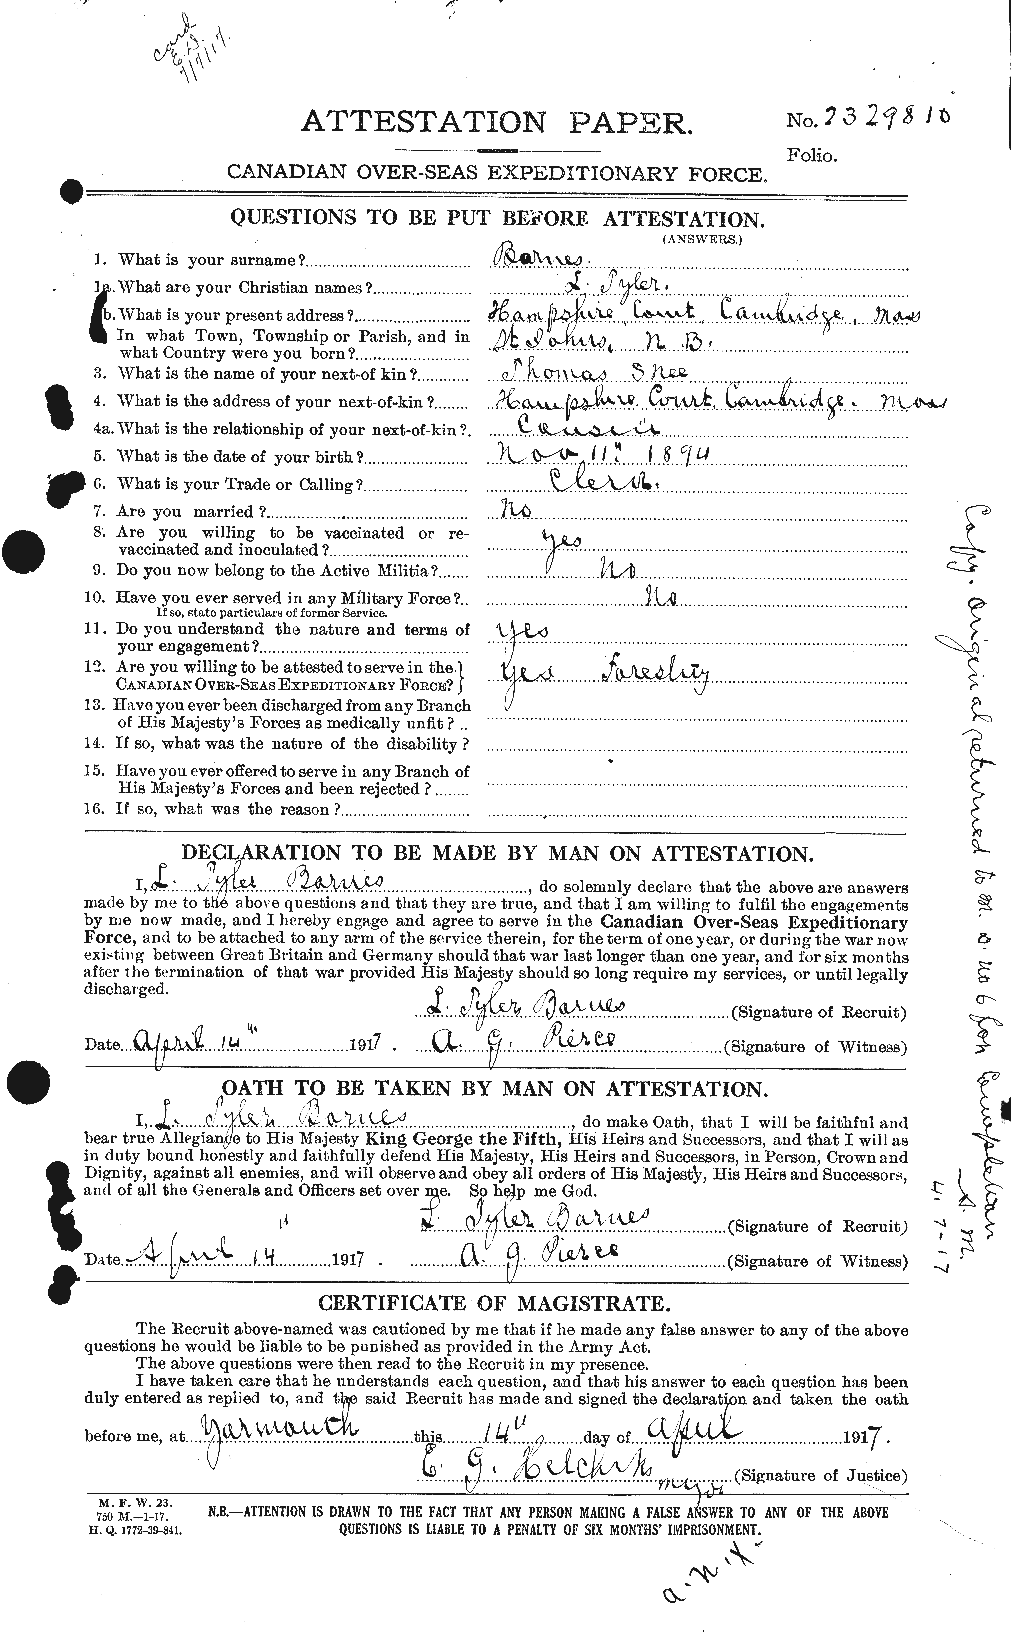 Dossiers du Personnel de la Première Guerre mondiale - CEC 227415a